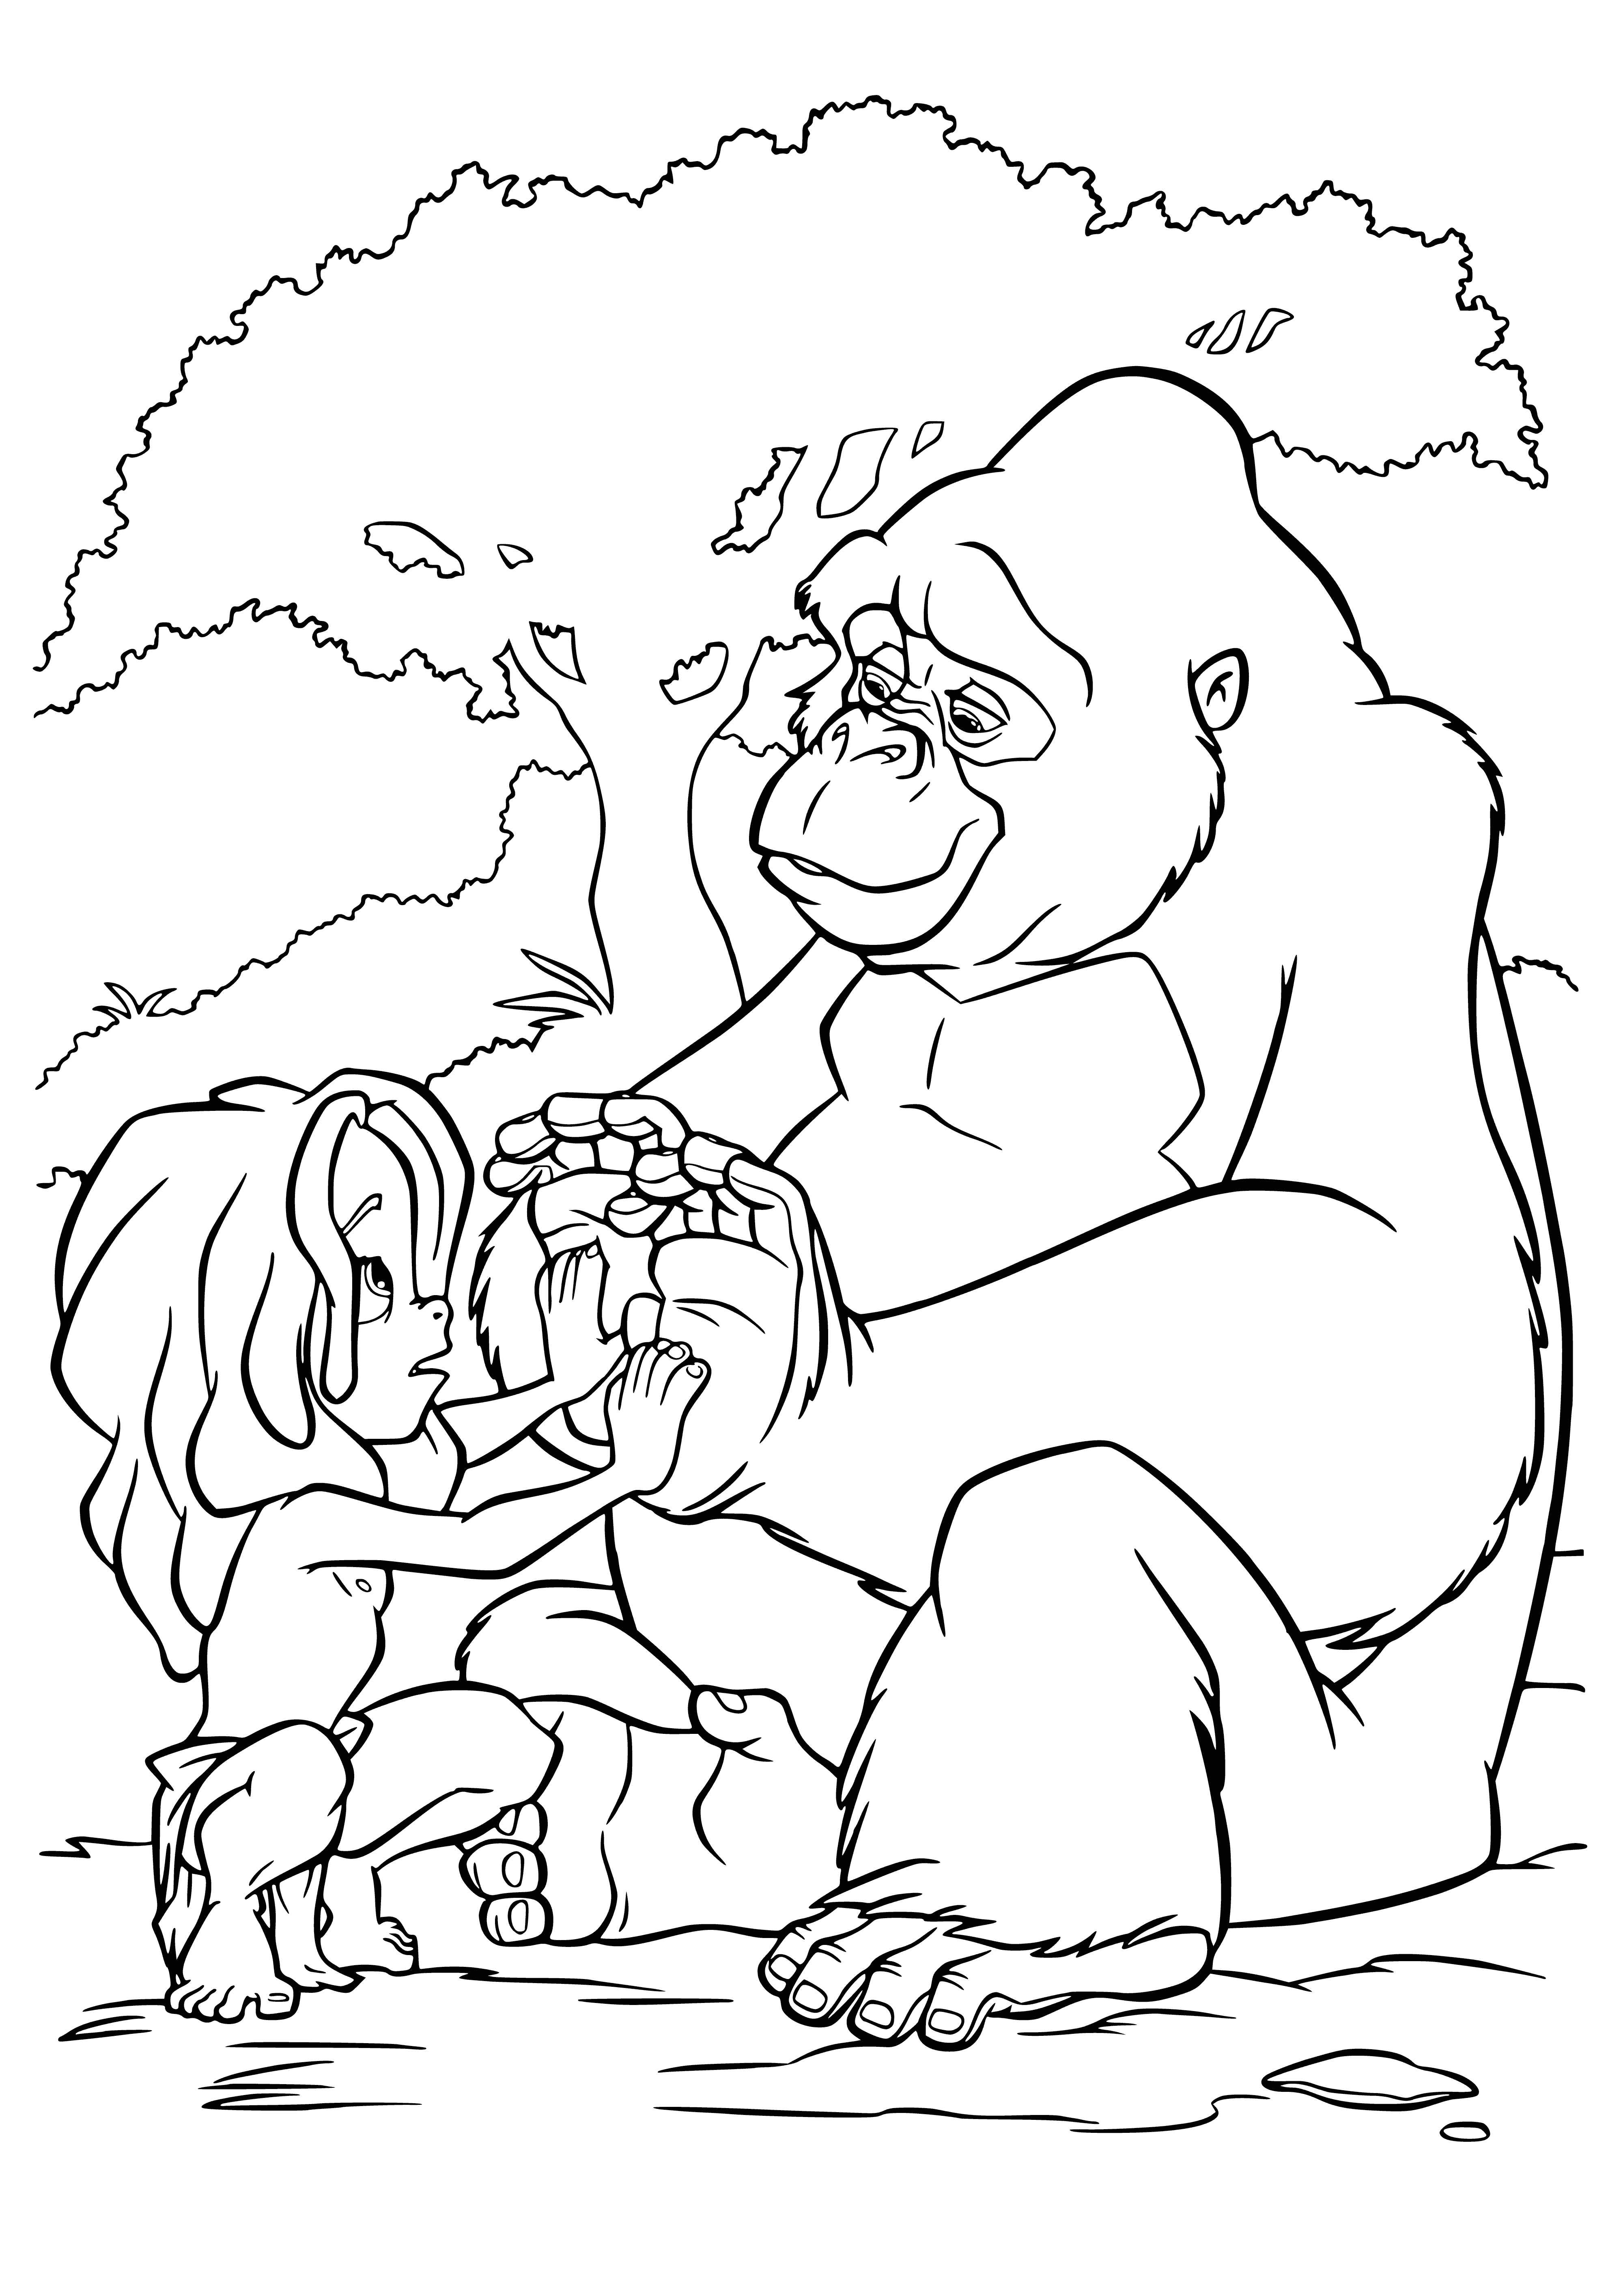 Tarzan and Cala coloring page